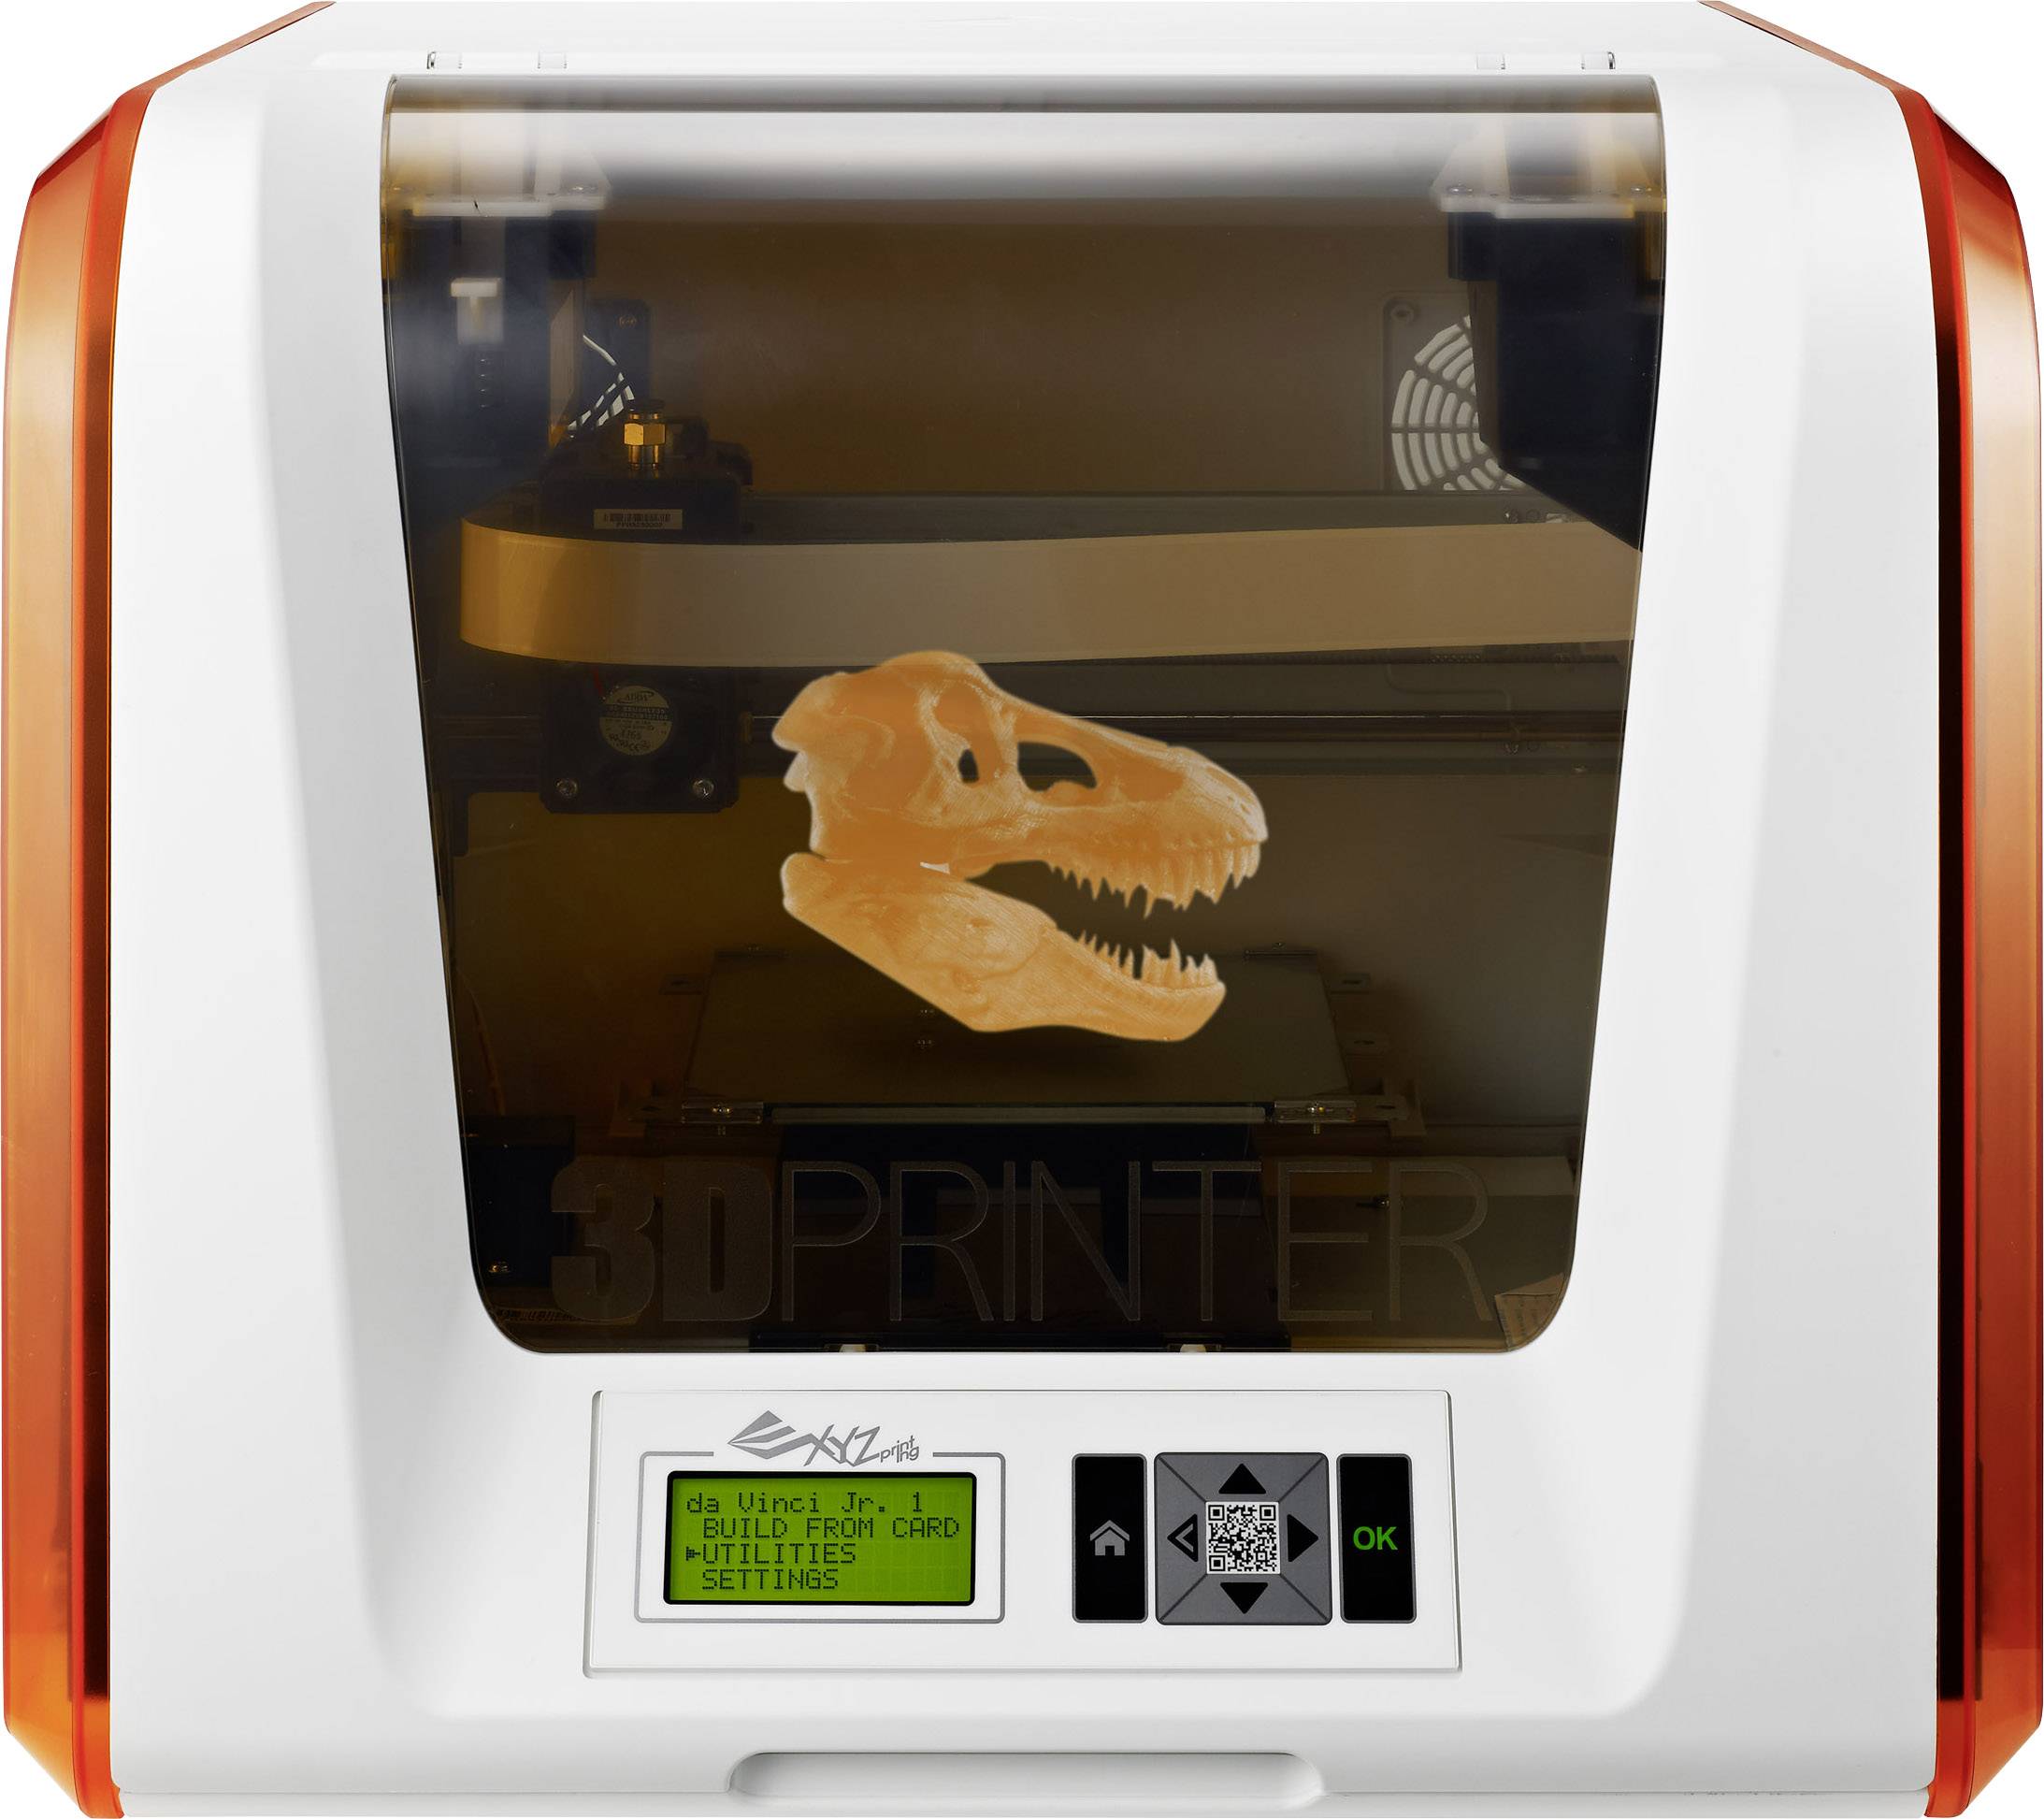 Imprimante 3D Da Vinci mini Logicom - Mon cadeau enfant